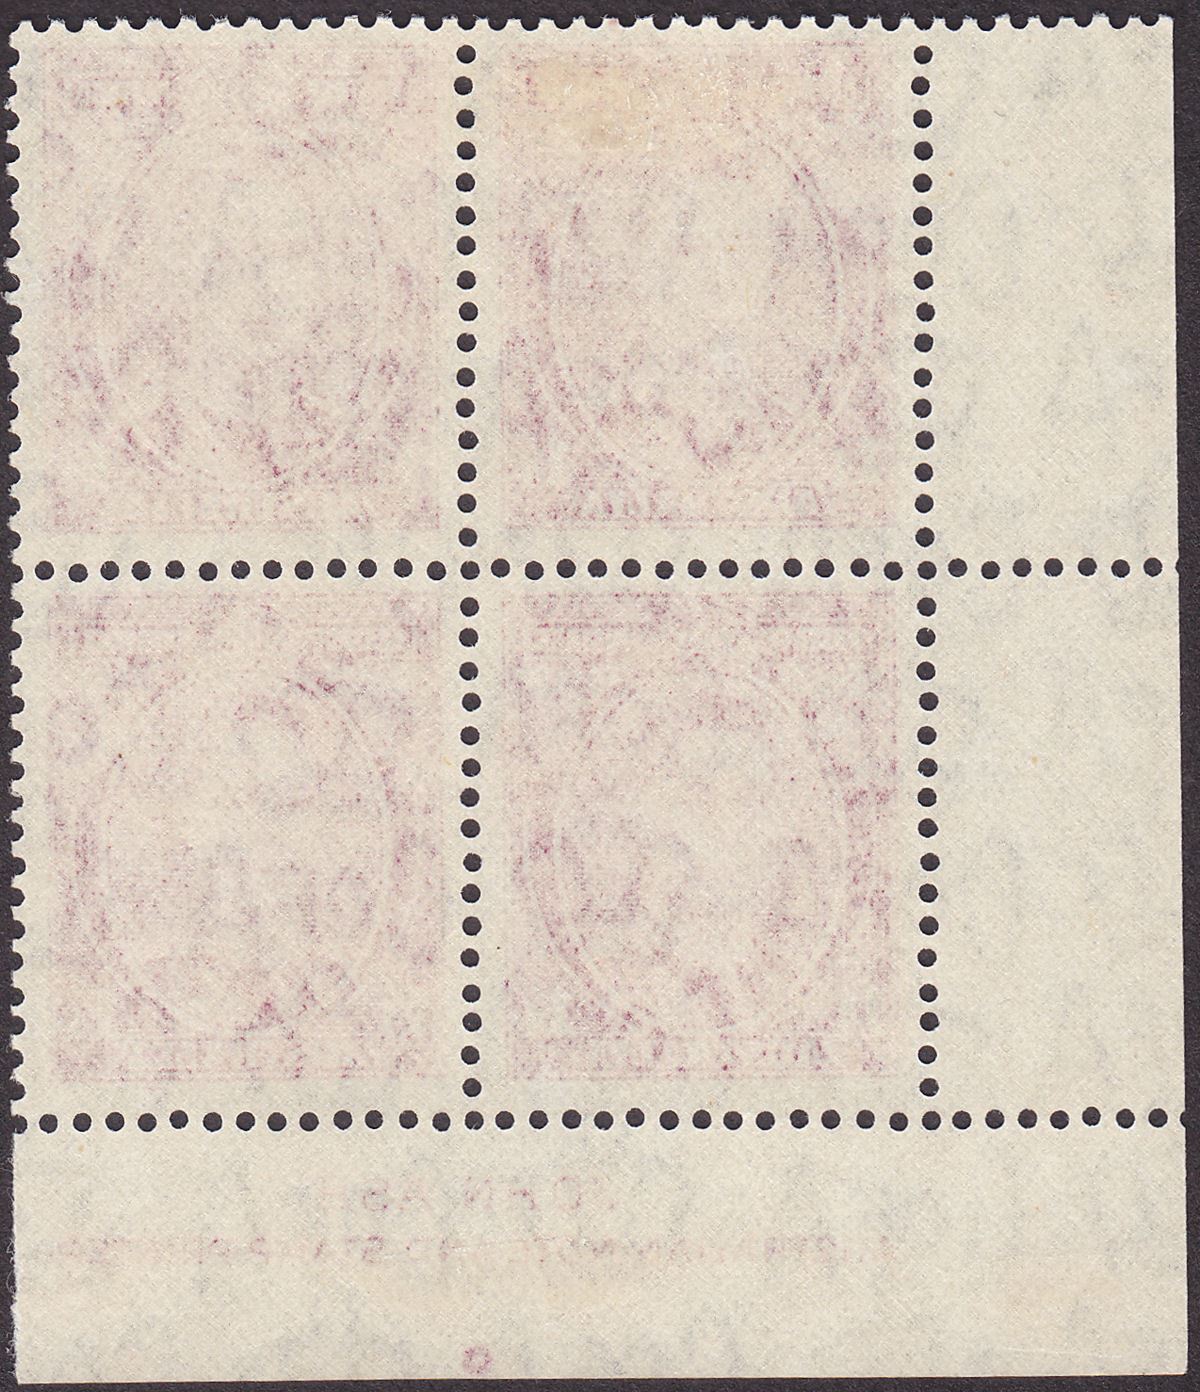 Australia 1943 KGVI 1sh4d Deep Magenta Imprint Block of 4 Mint SG175a